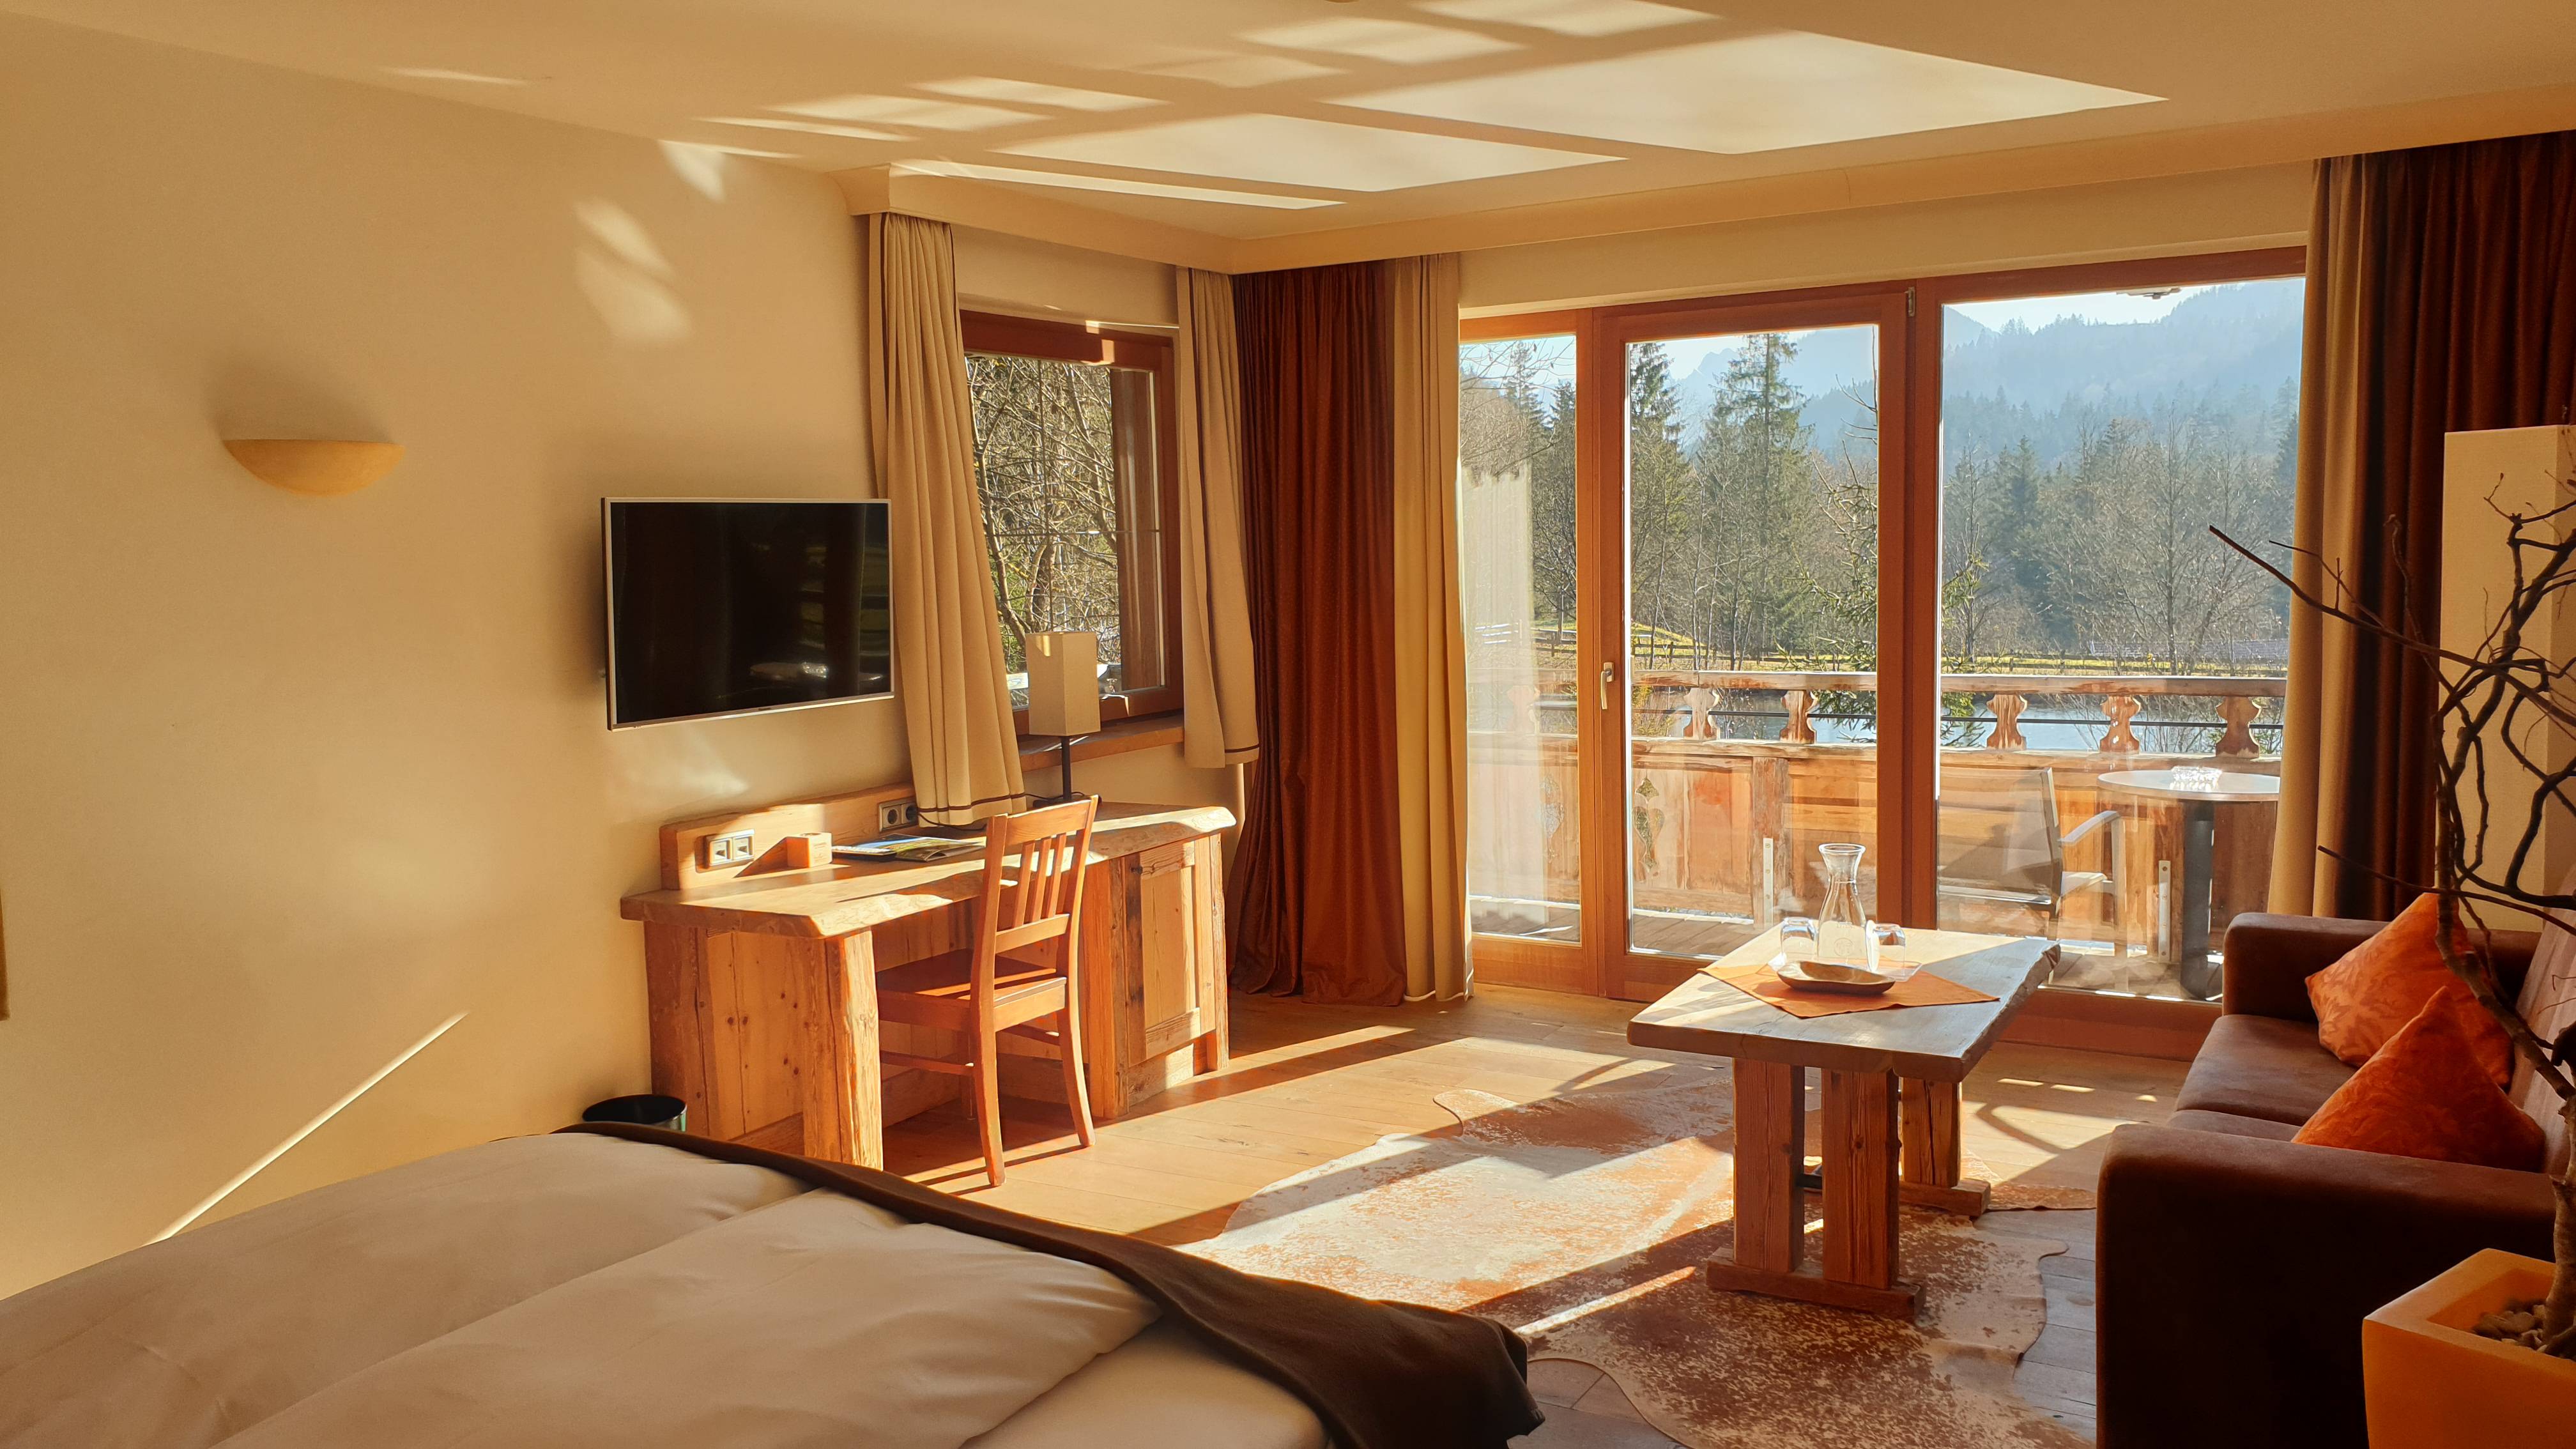 Gemütliches Hotelzimmer mit Blick auf die Landschaft